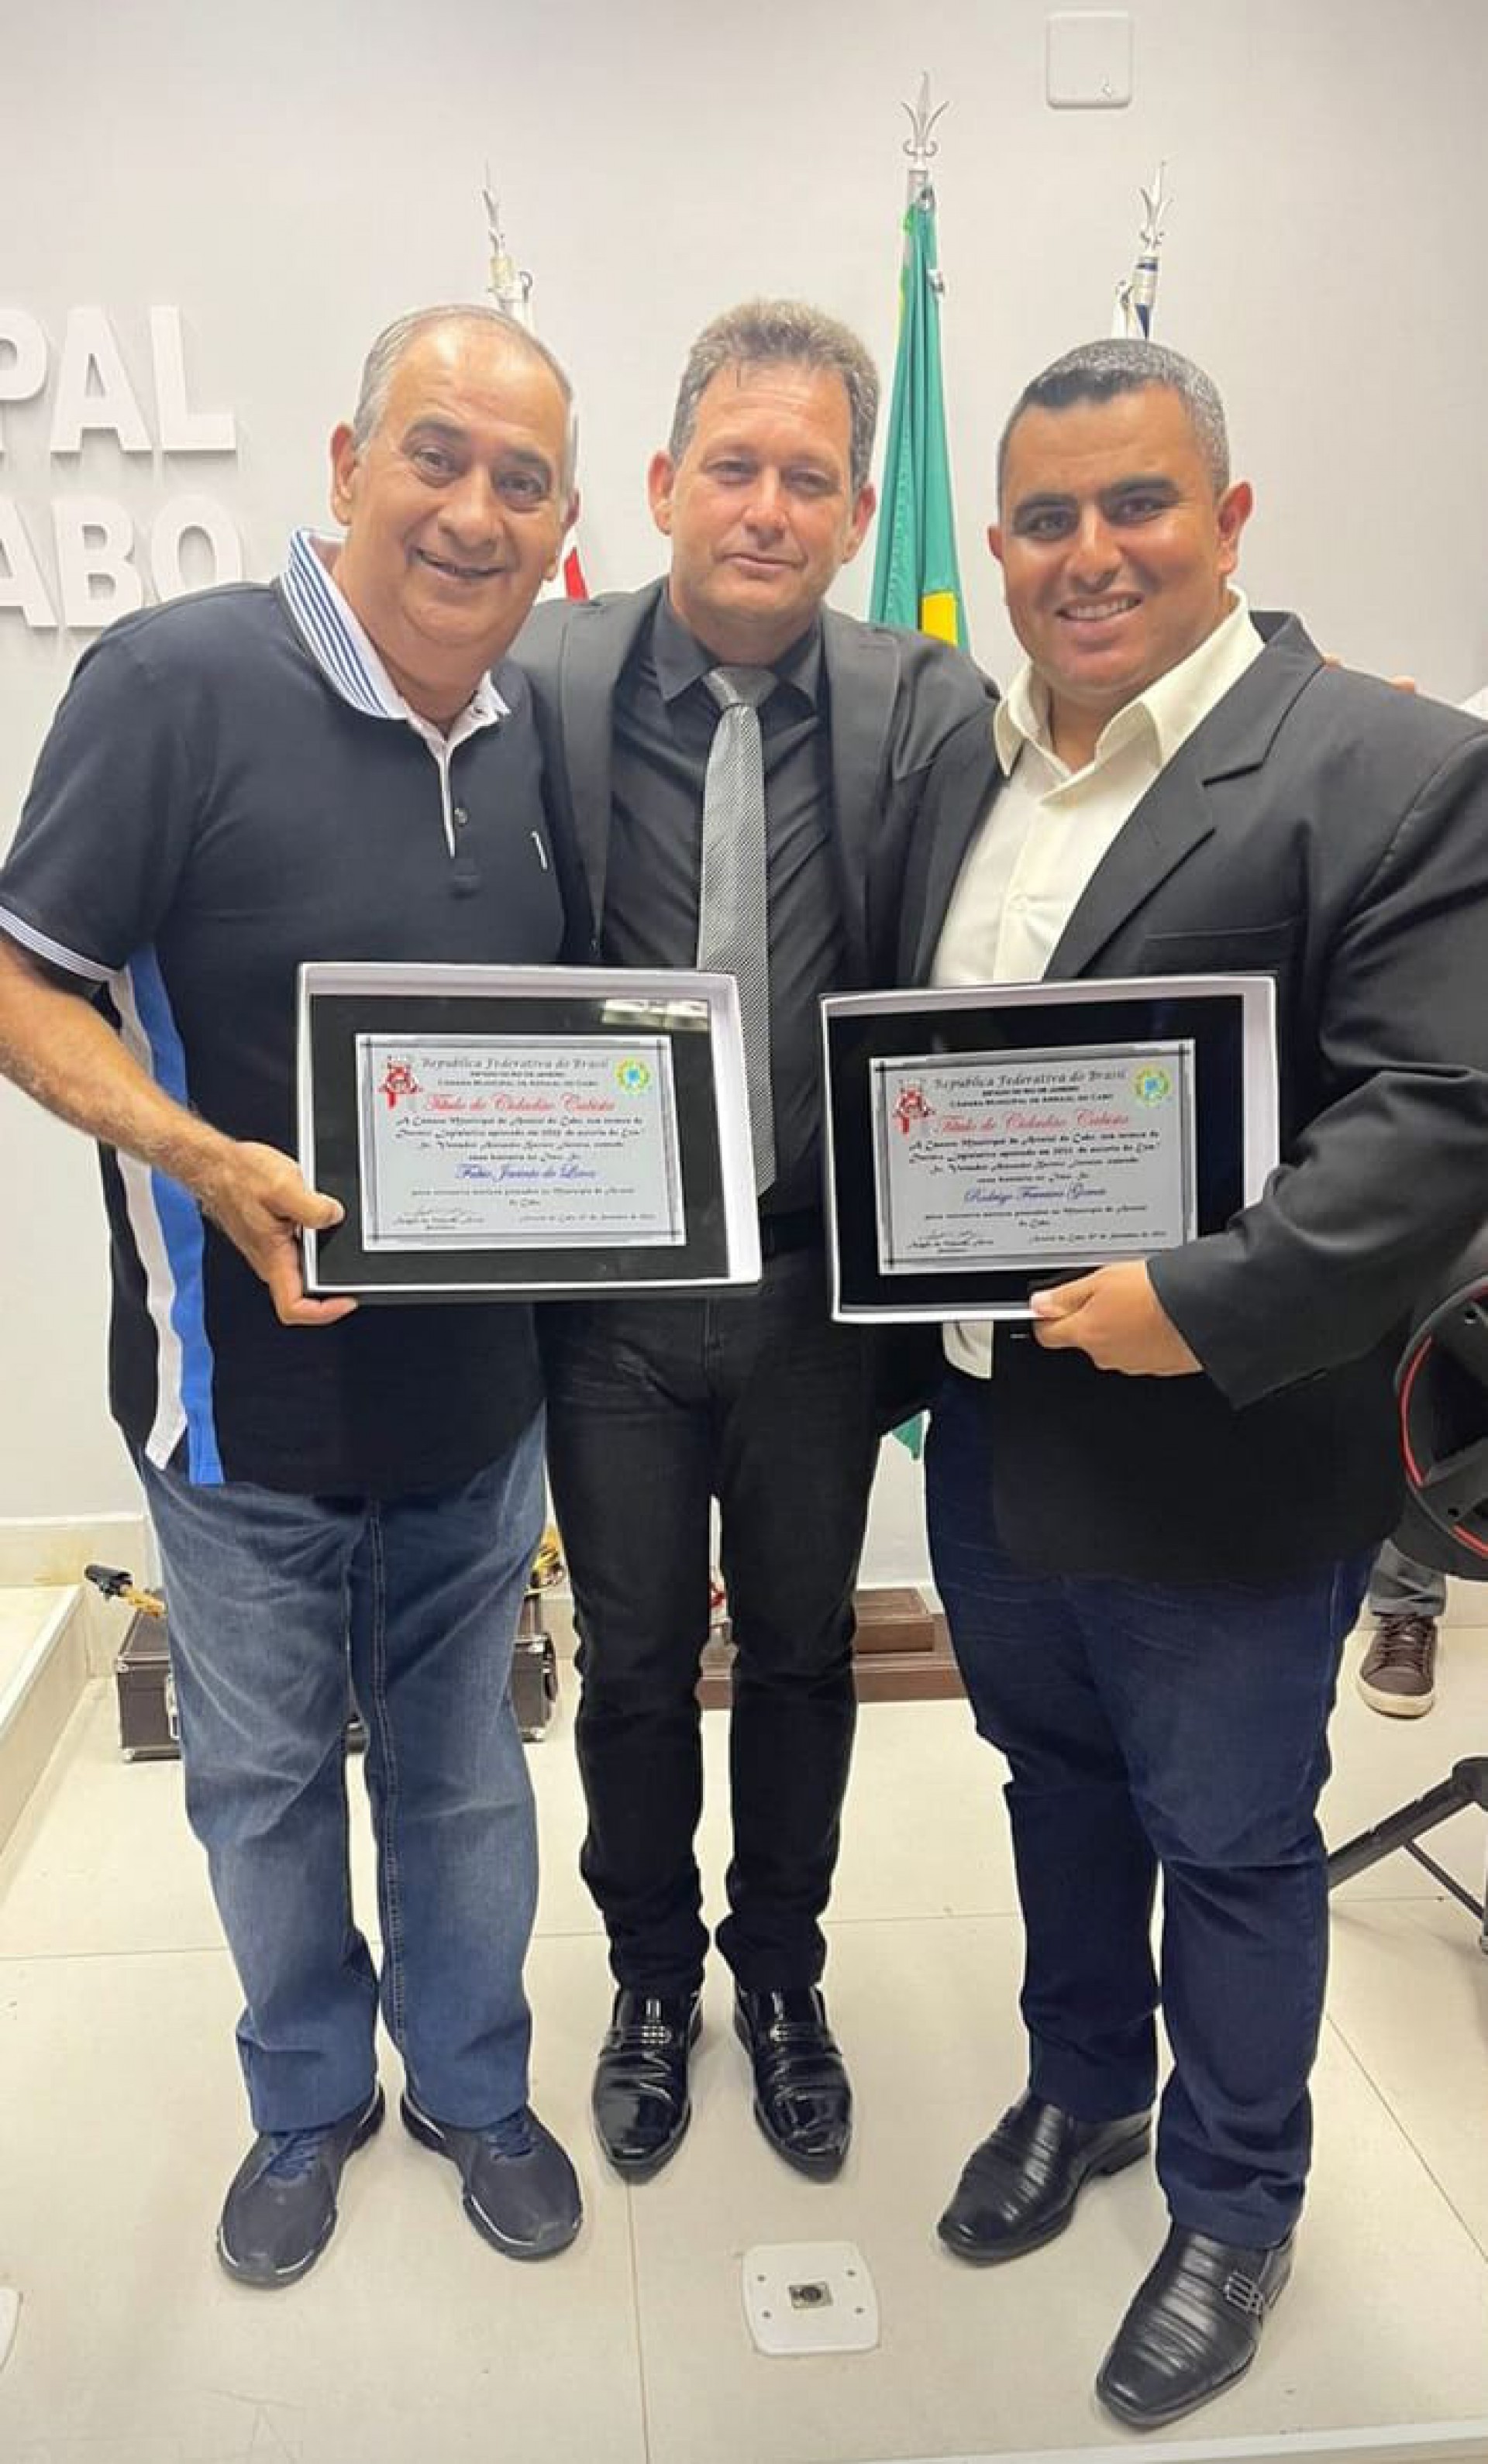 Fábio Barriga (E), Galego e Rodrigo Gomes após receber a honraria na Câmara Municipal de Arraial do Cabo - Divulgação